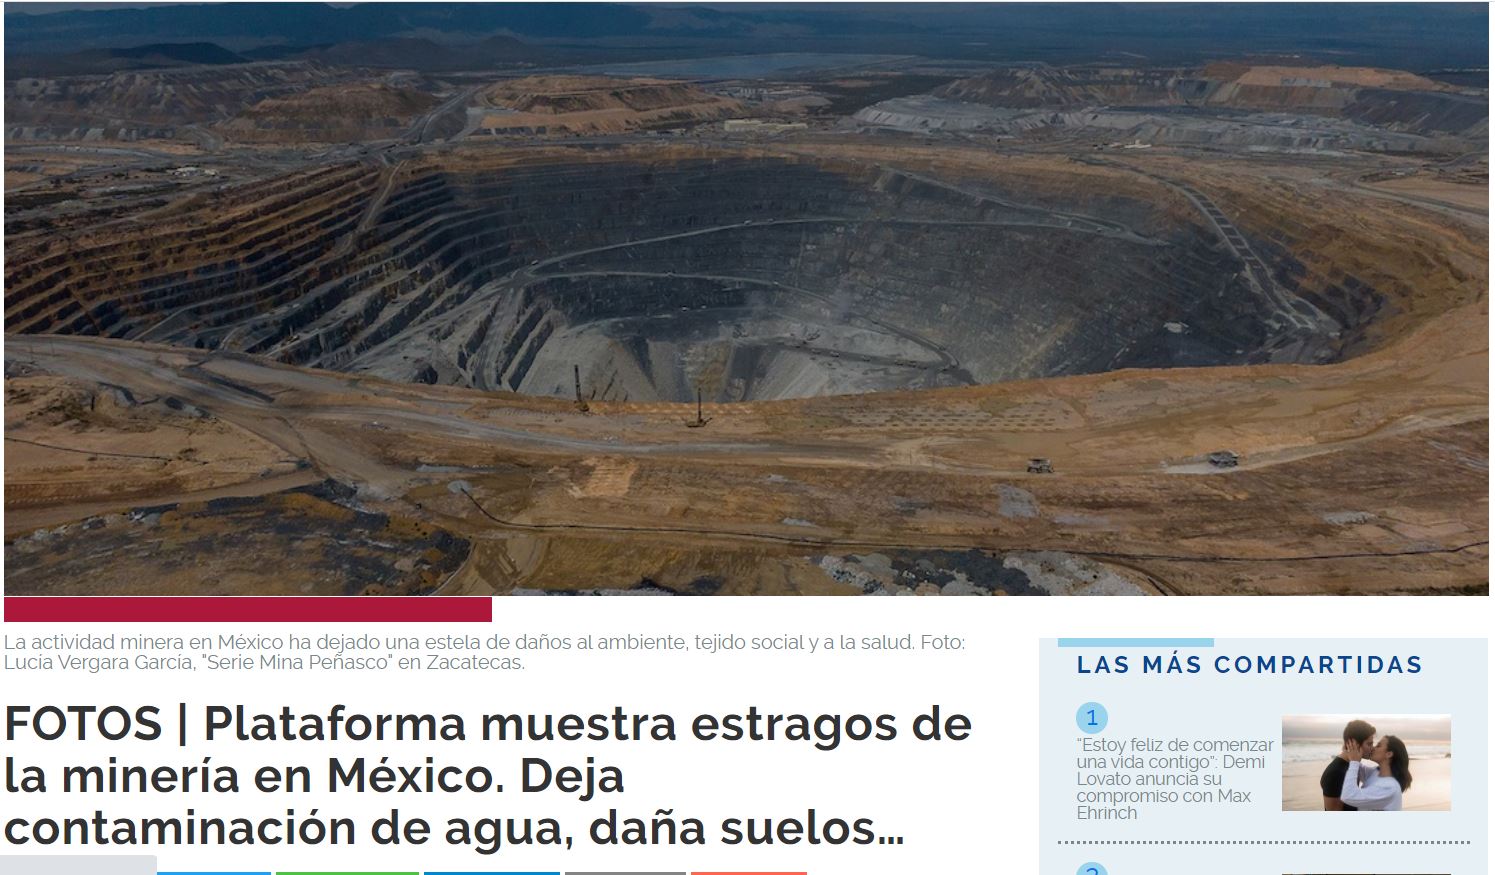 Plataforma muestra estragos de la minería en México. Deja contaminación de agua, daña suelos…